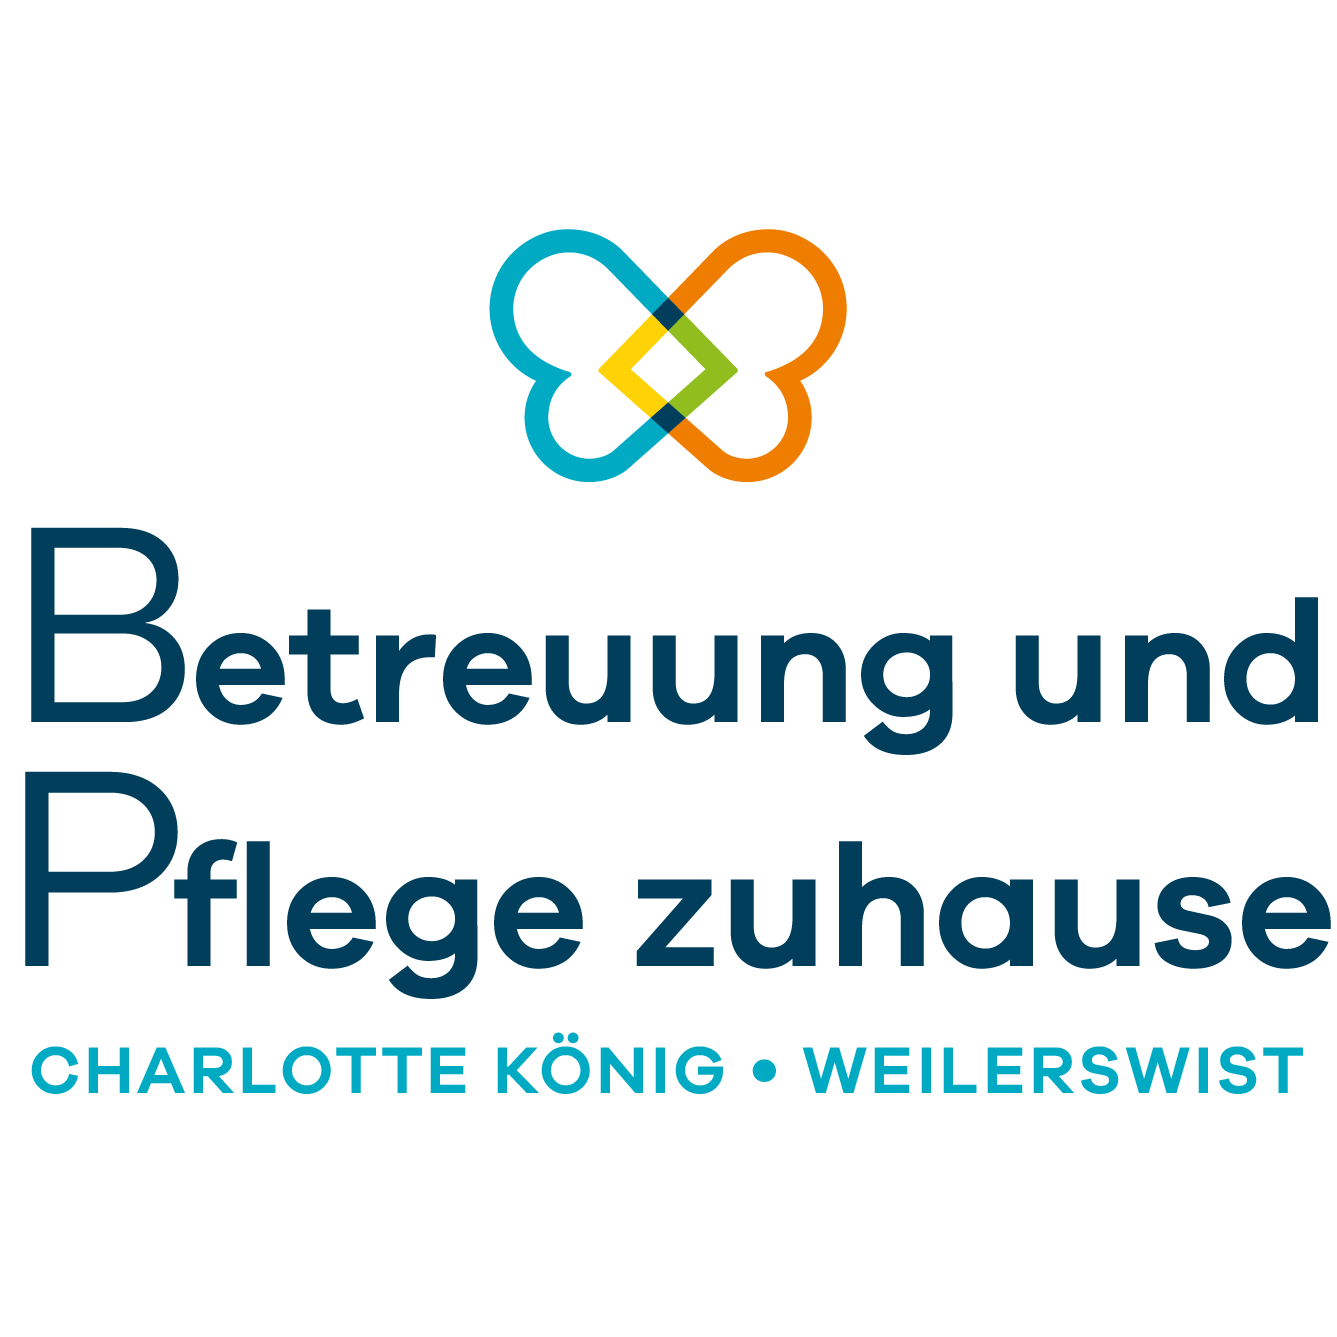 Betreuung und Pflege zuhause Charlotte König Weilerswist Logo